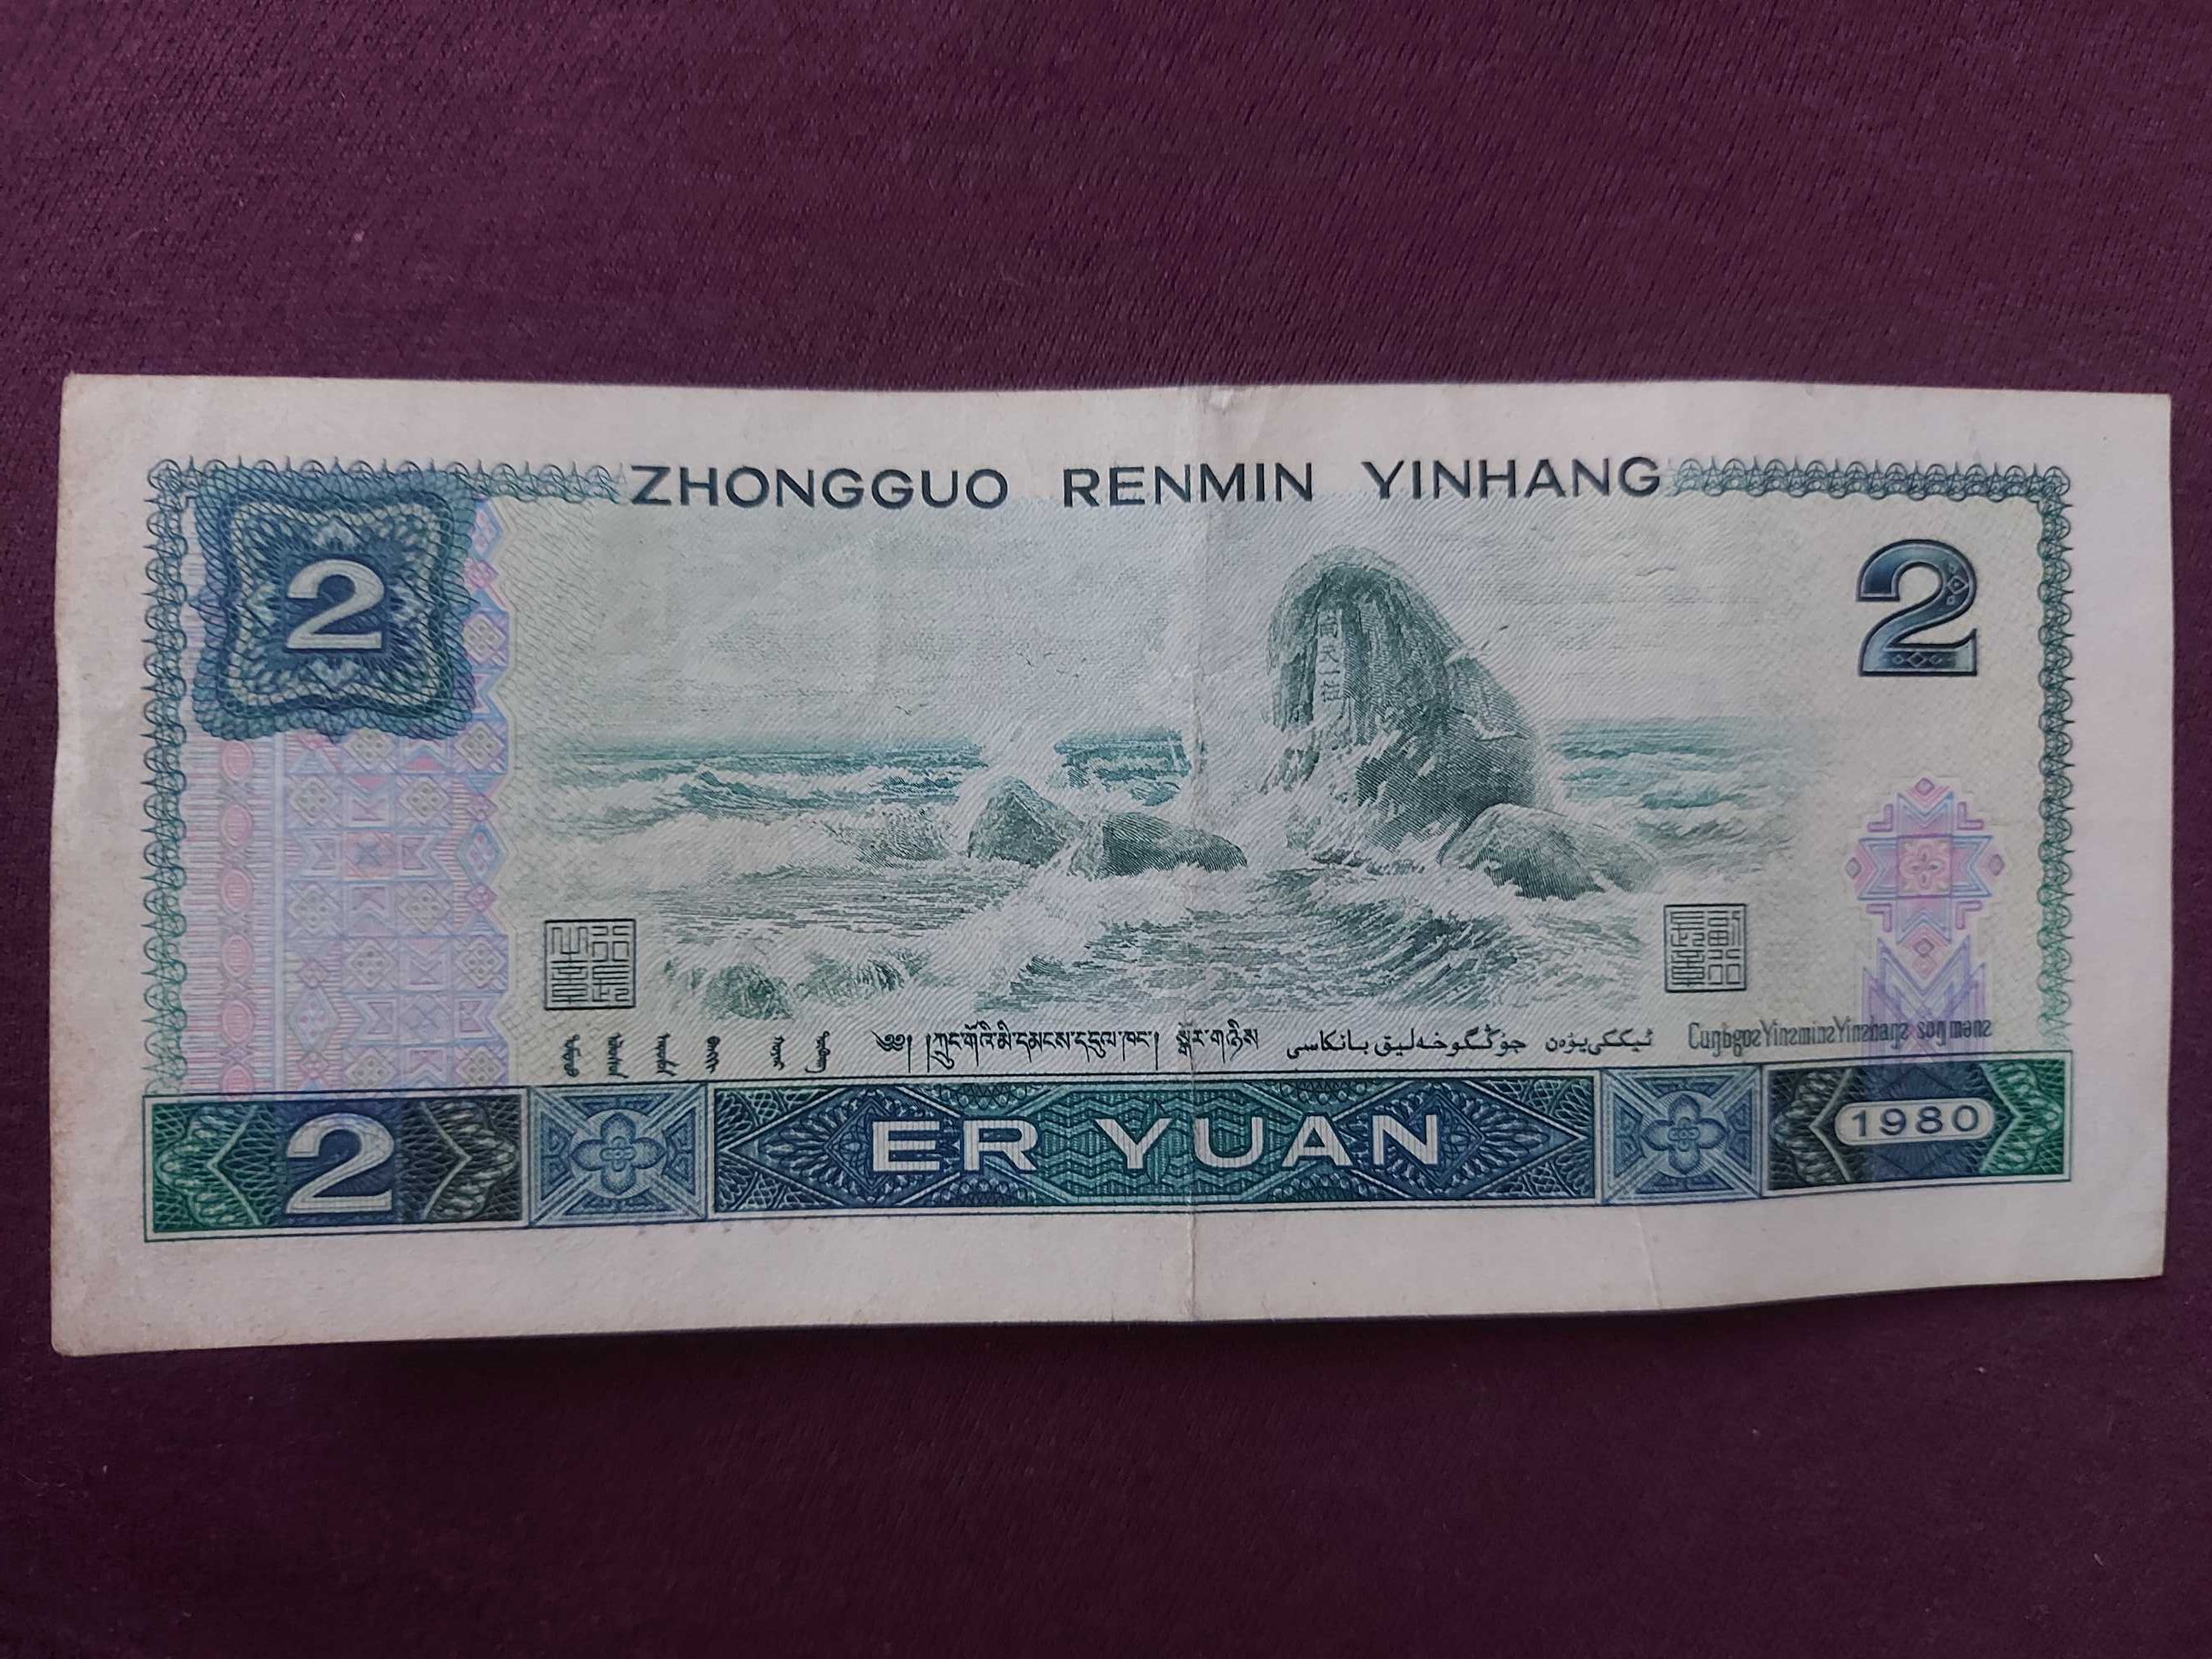 2 yuani (1980) China